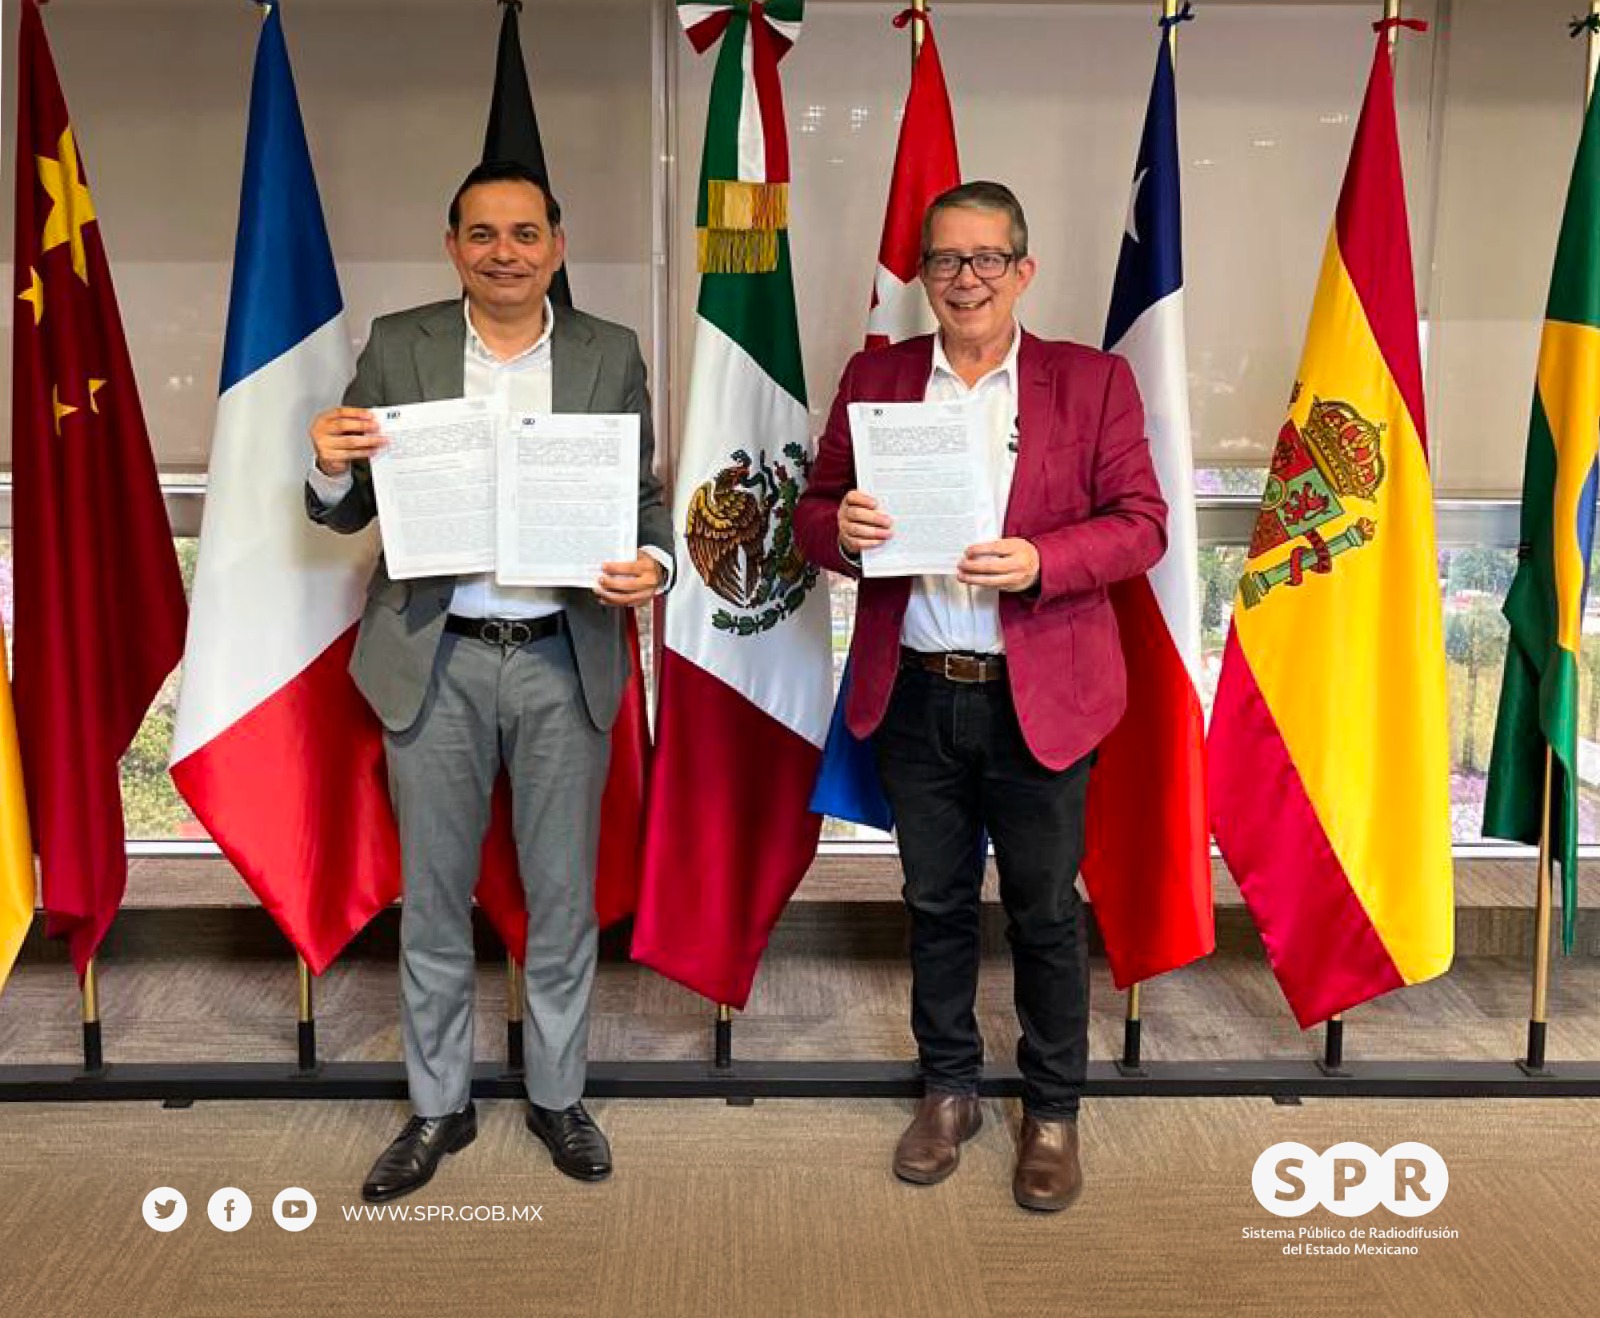 El SPR y Radiotelevisión de Veracruz firman convenio de colaboración